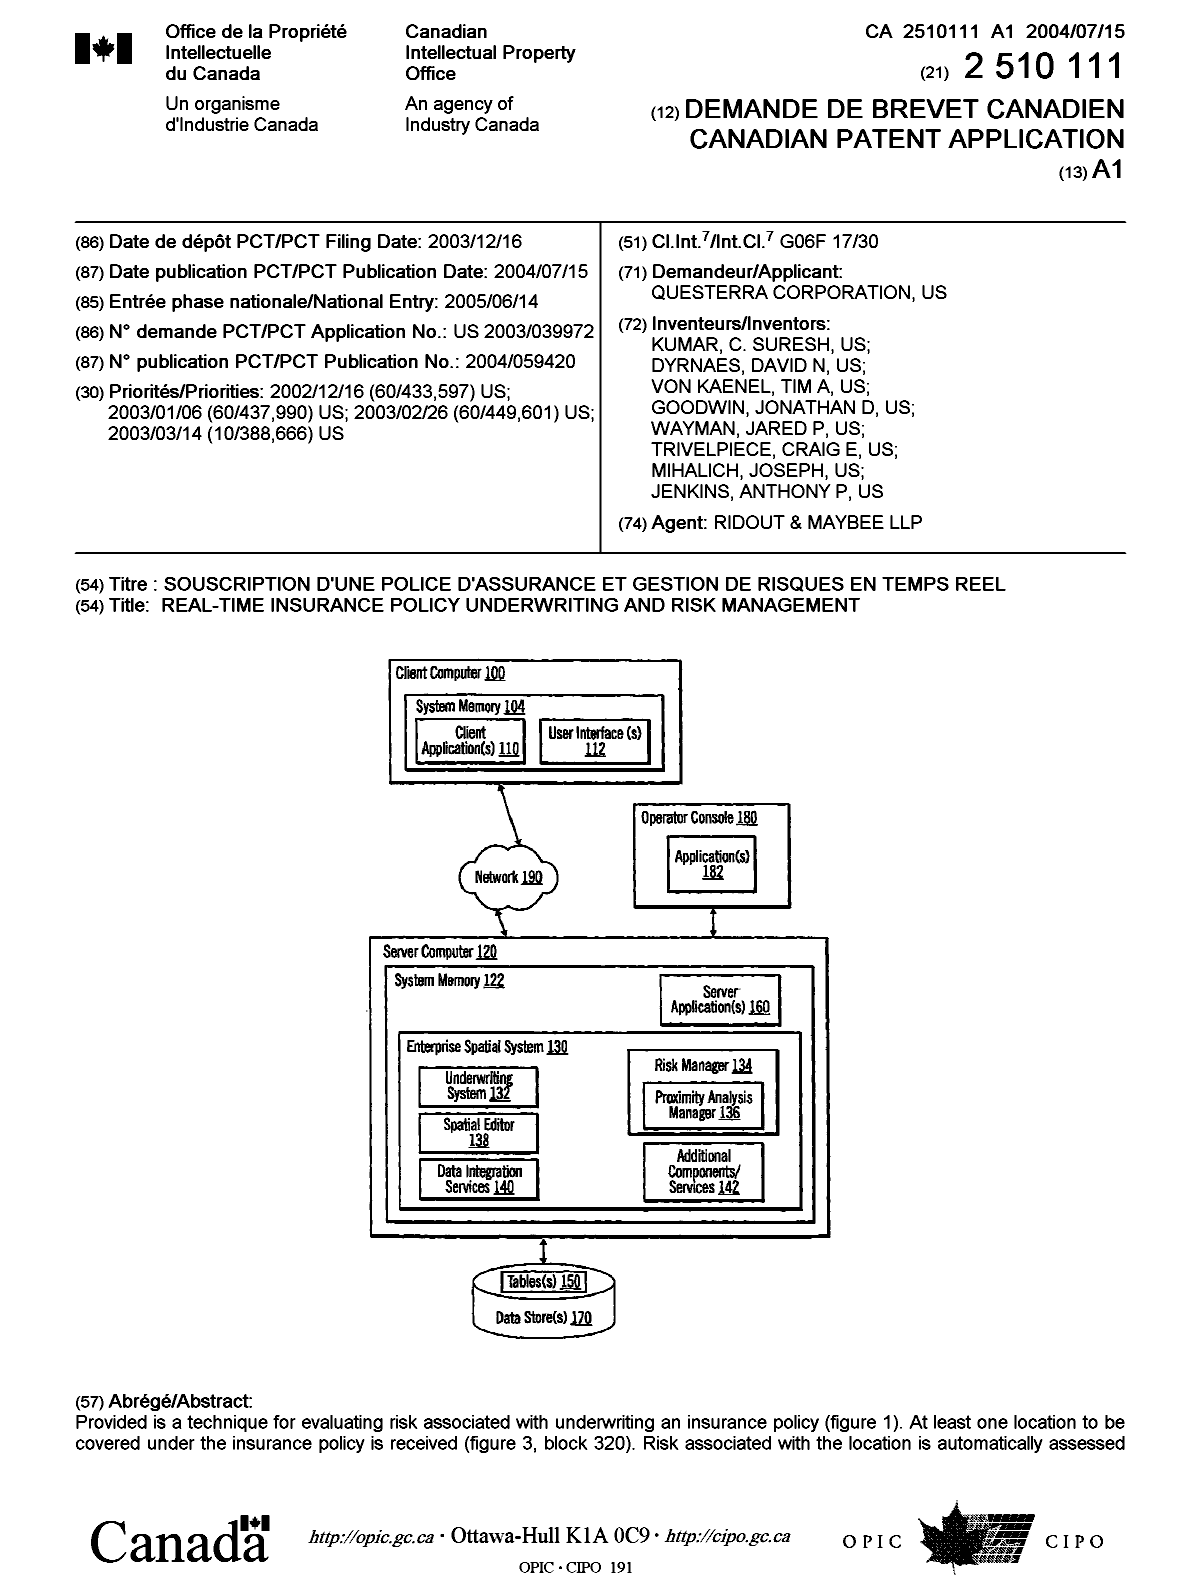 Document de brevet canadien 2510111. Page couverture 20050912. Image 1 de 2